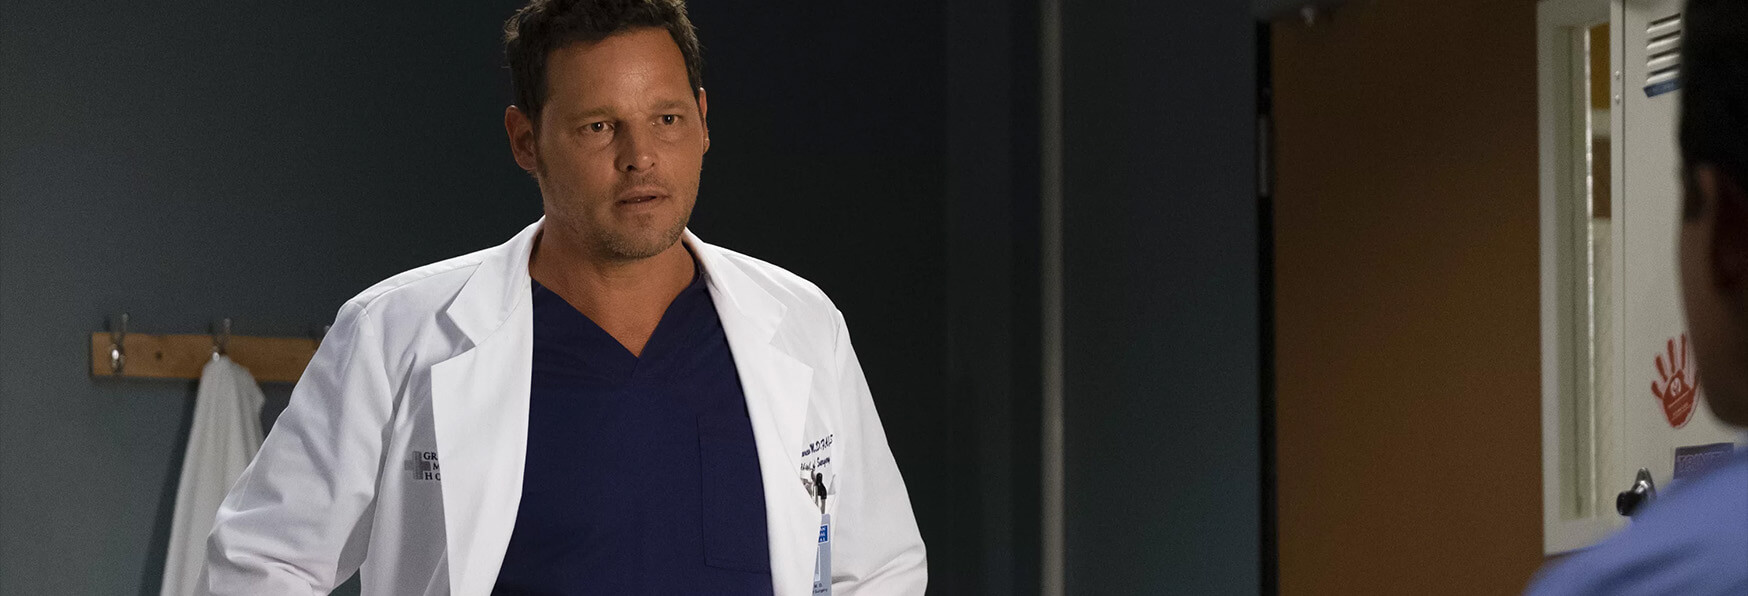 Recensione di Grey's Anatomy 15x03, Gut Feeling: il nuovo Boss Karev